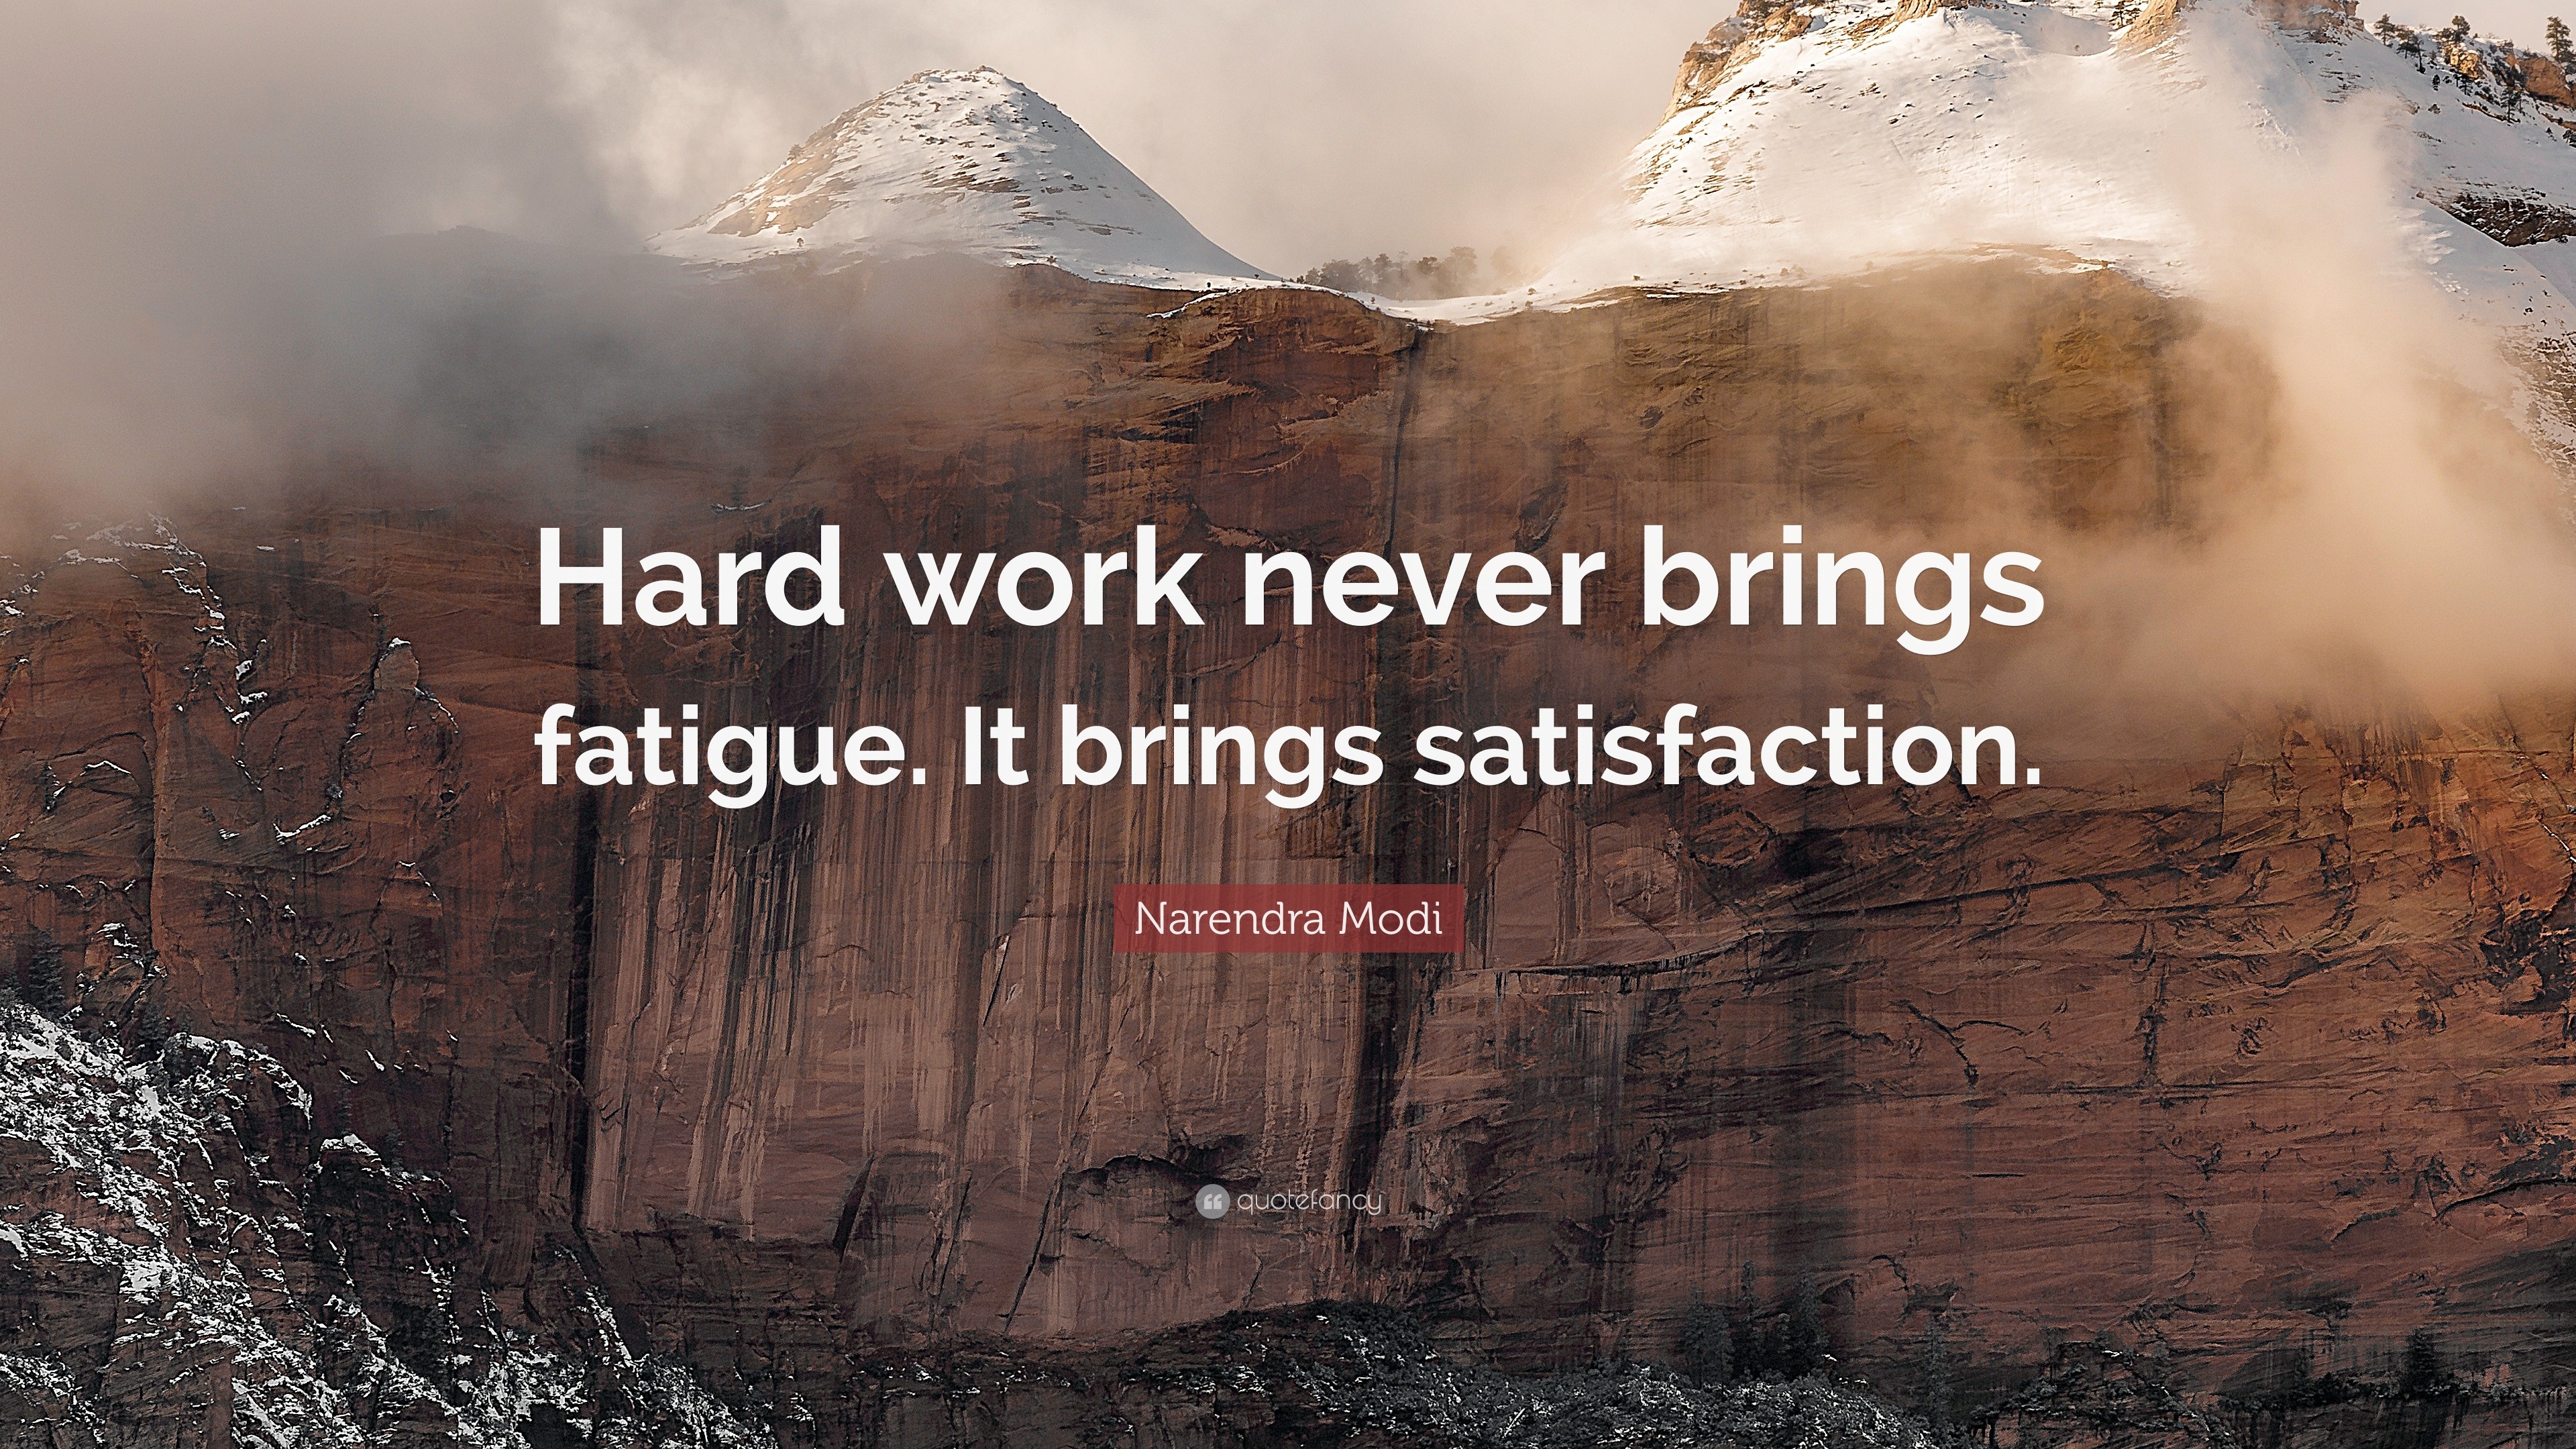 Narendra Modi Quote: “Hard work never brings fatigue. It brings